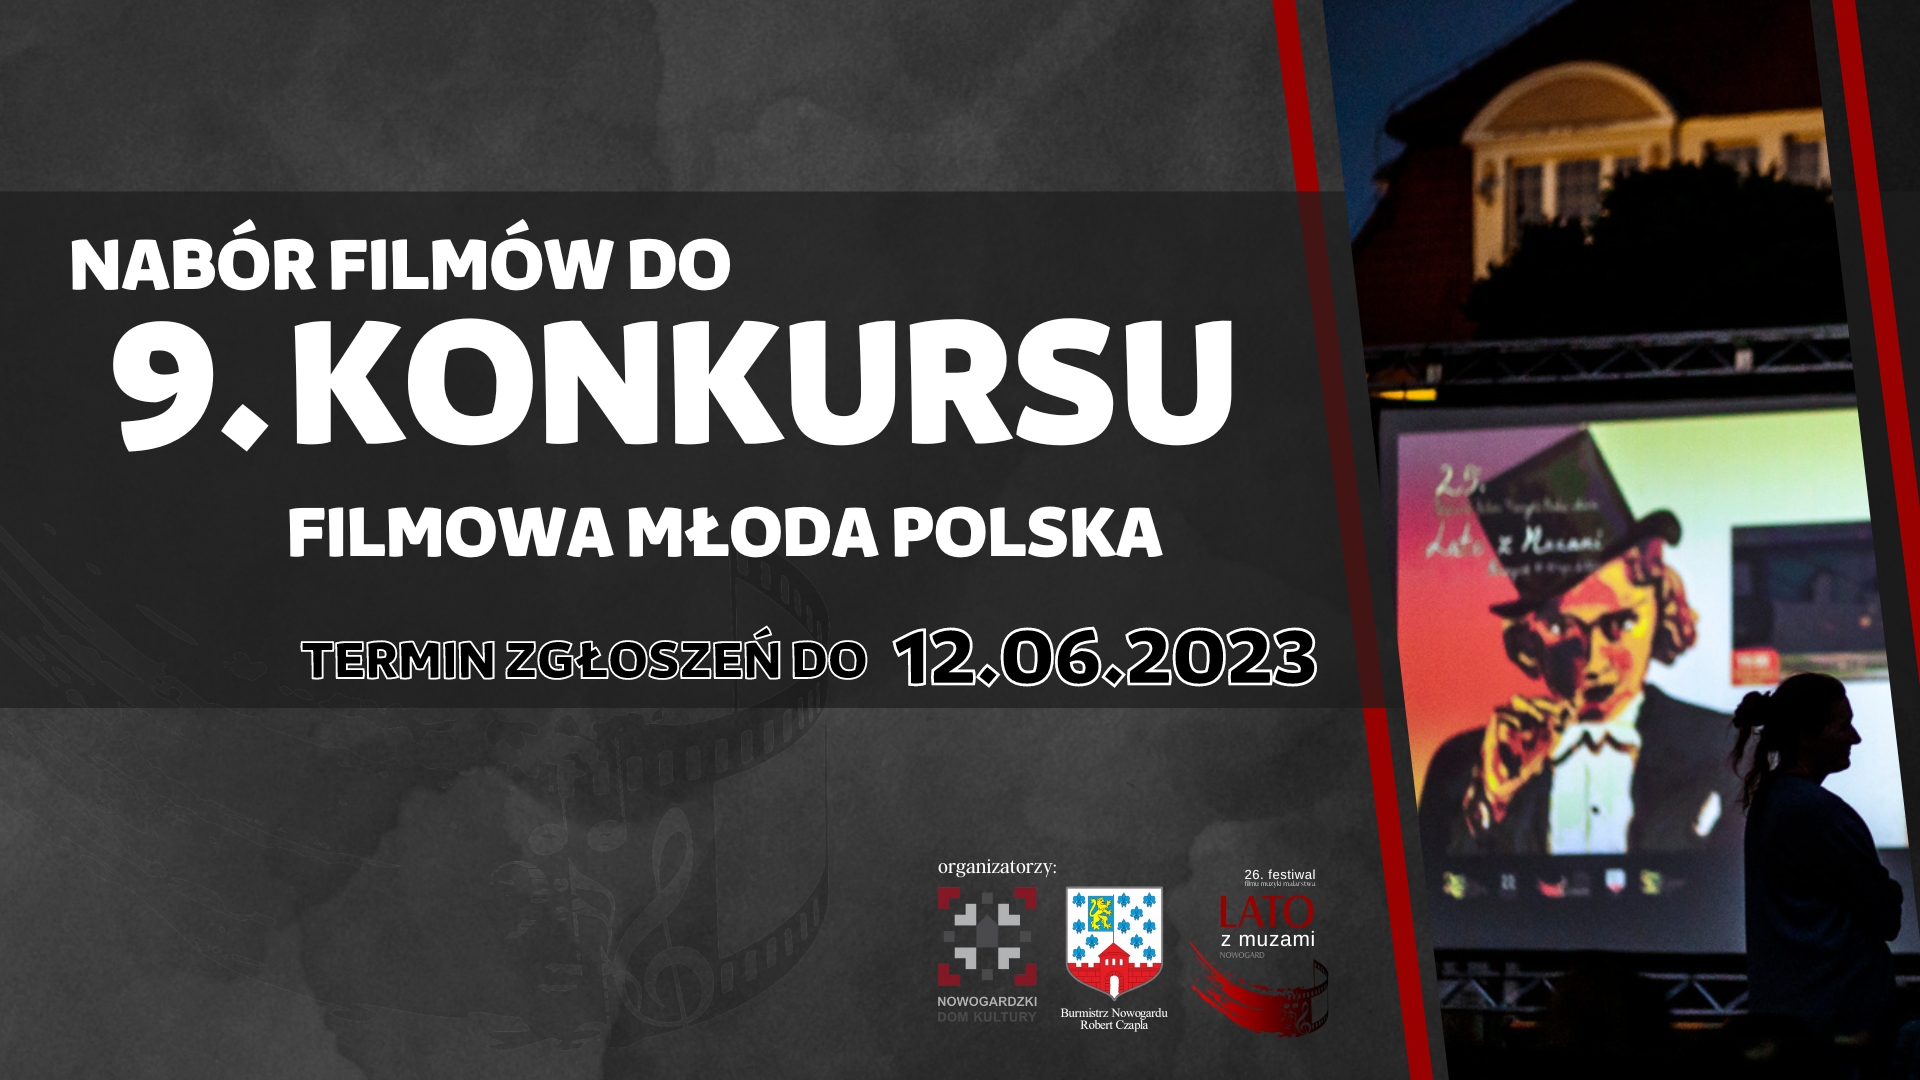 26. Festiwal LATO Z MUZAMI w Nowogardzie: nabór filmów do 9. Konkursu Filmowa Młoda Polska